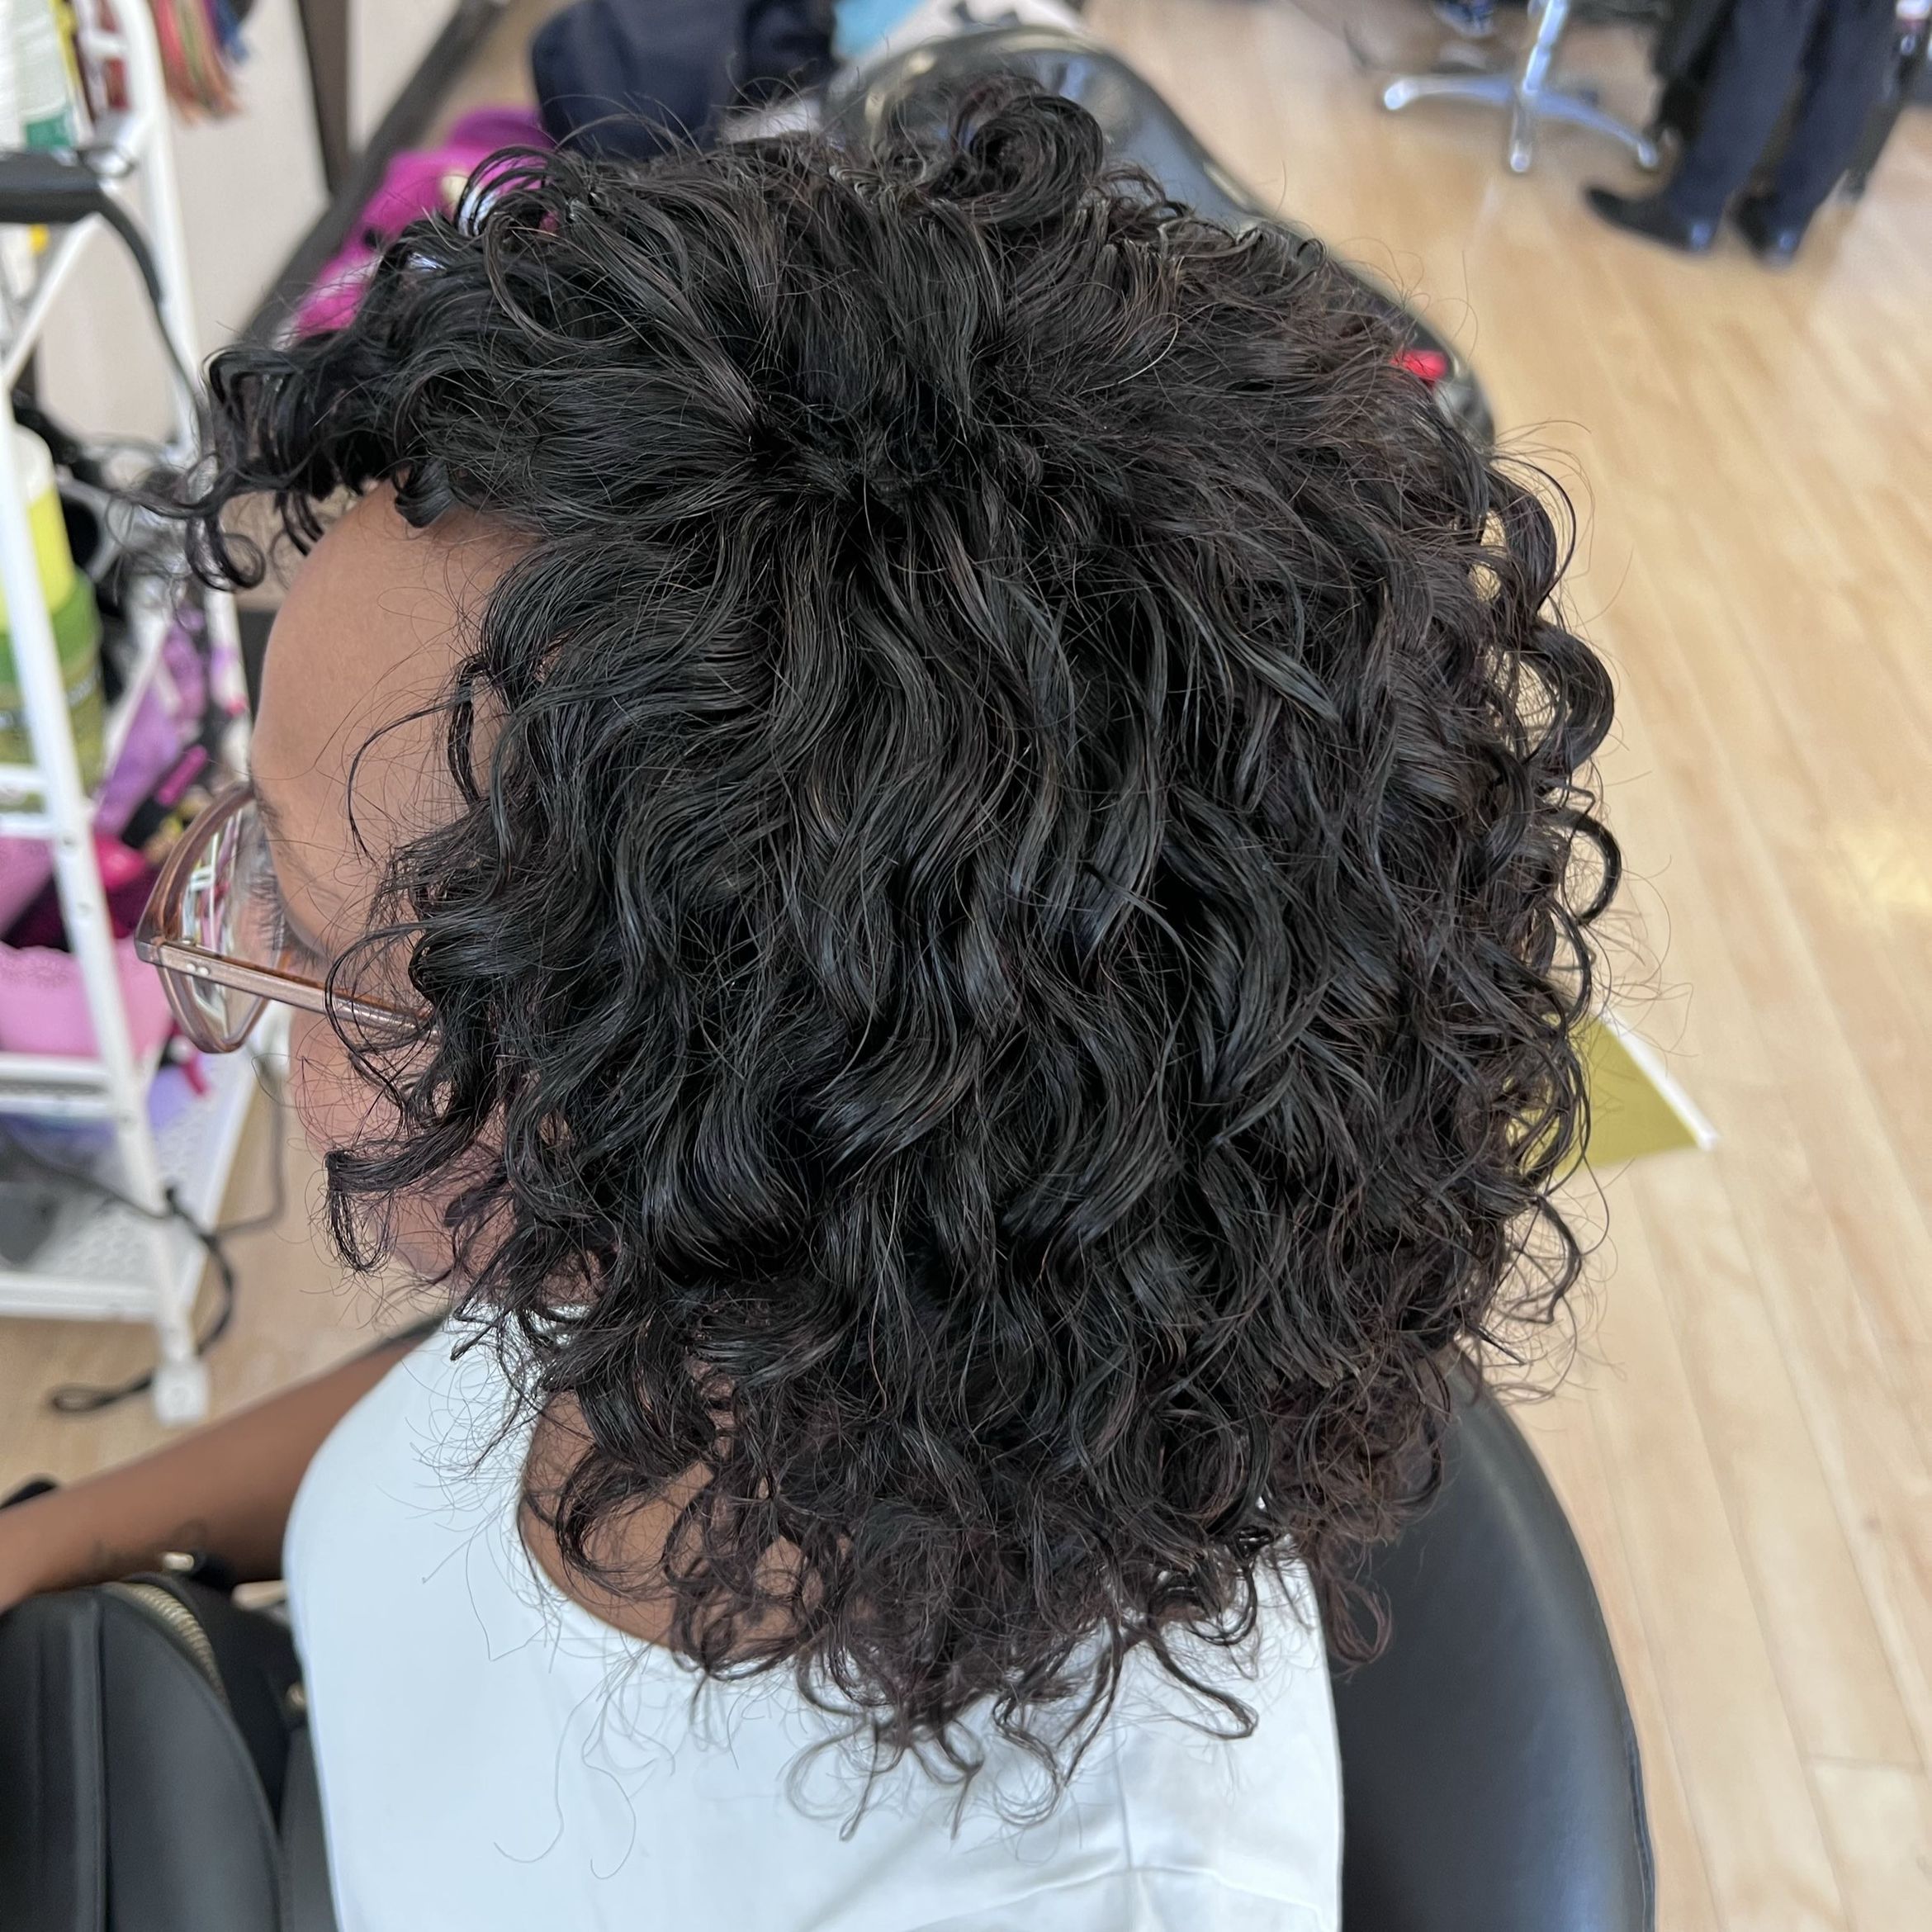 Full Weave (Afro Hair) From portfolio